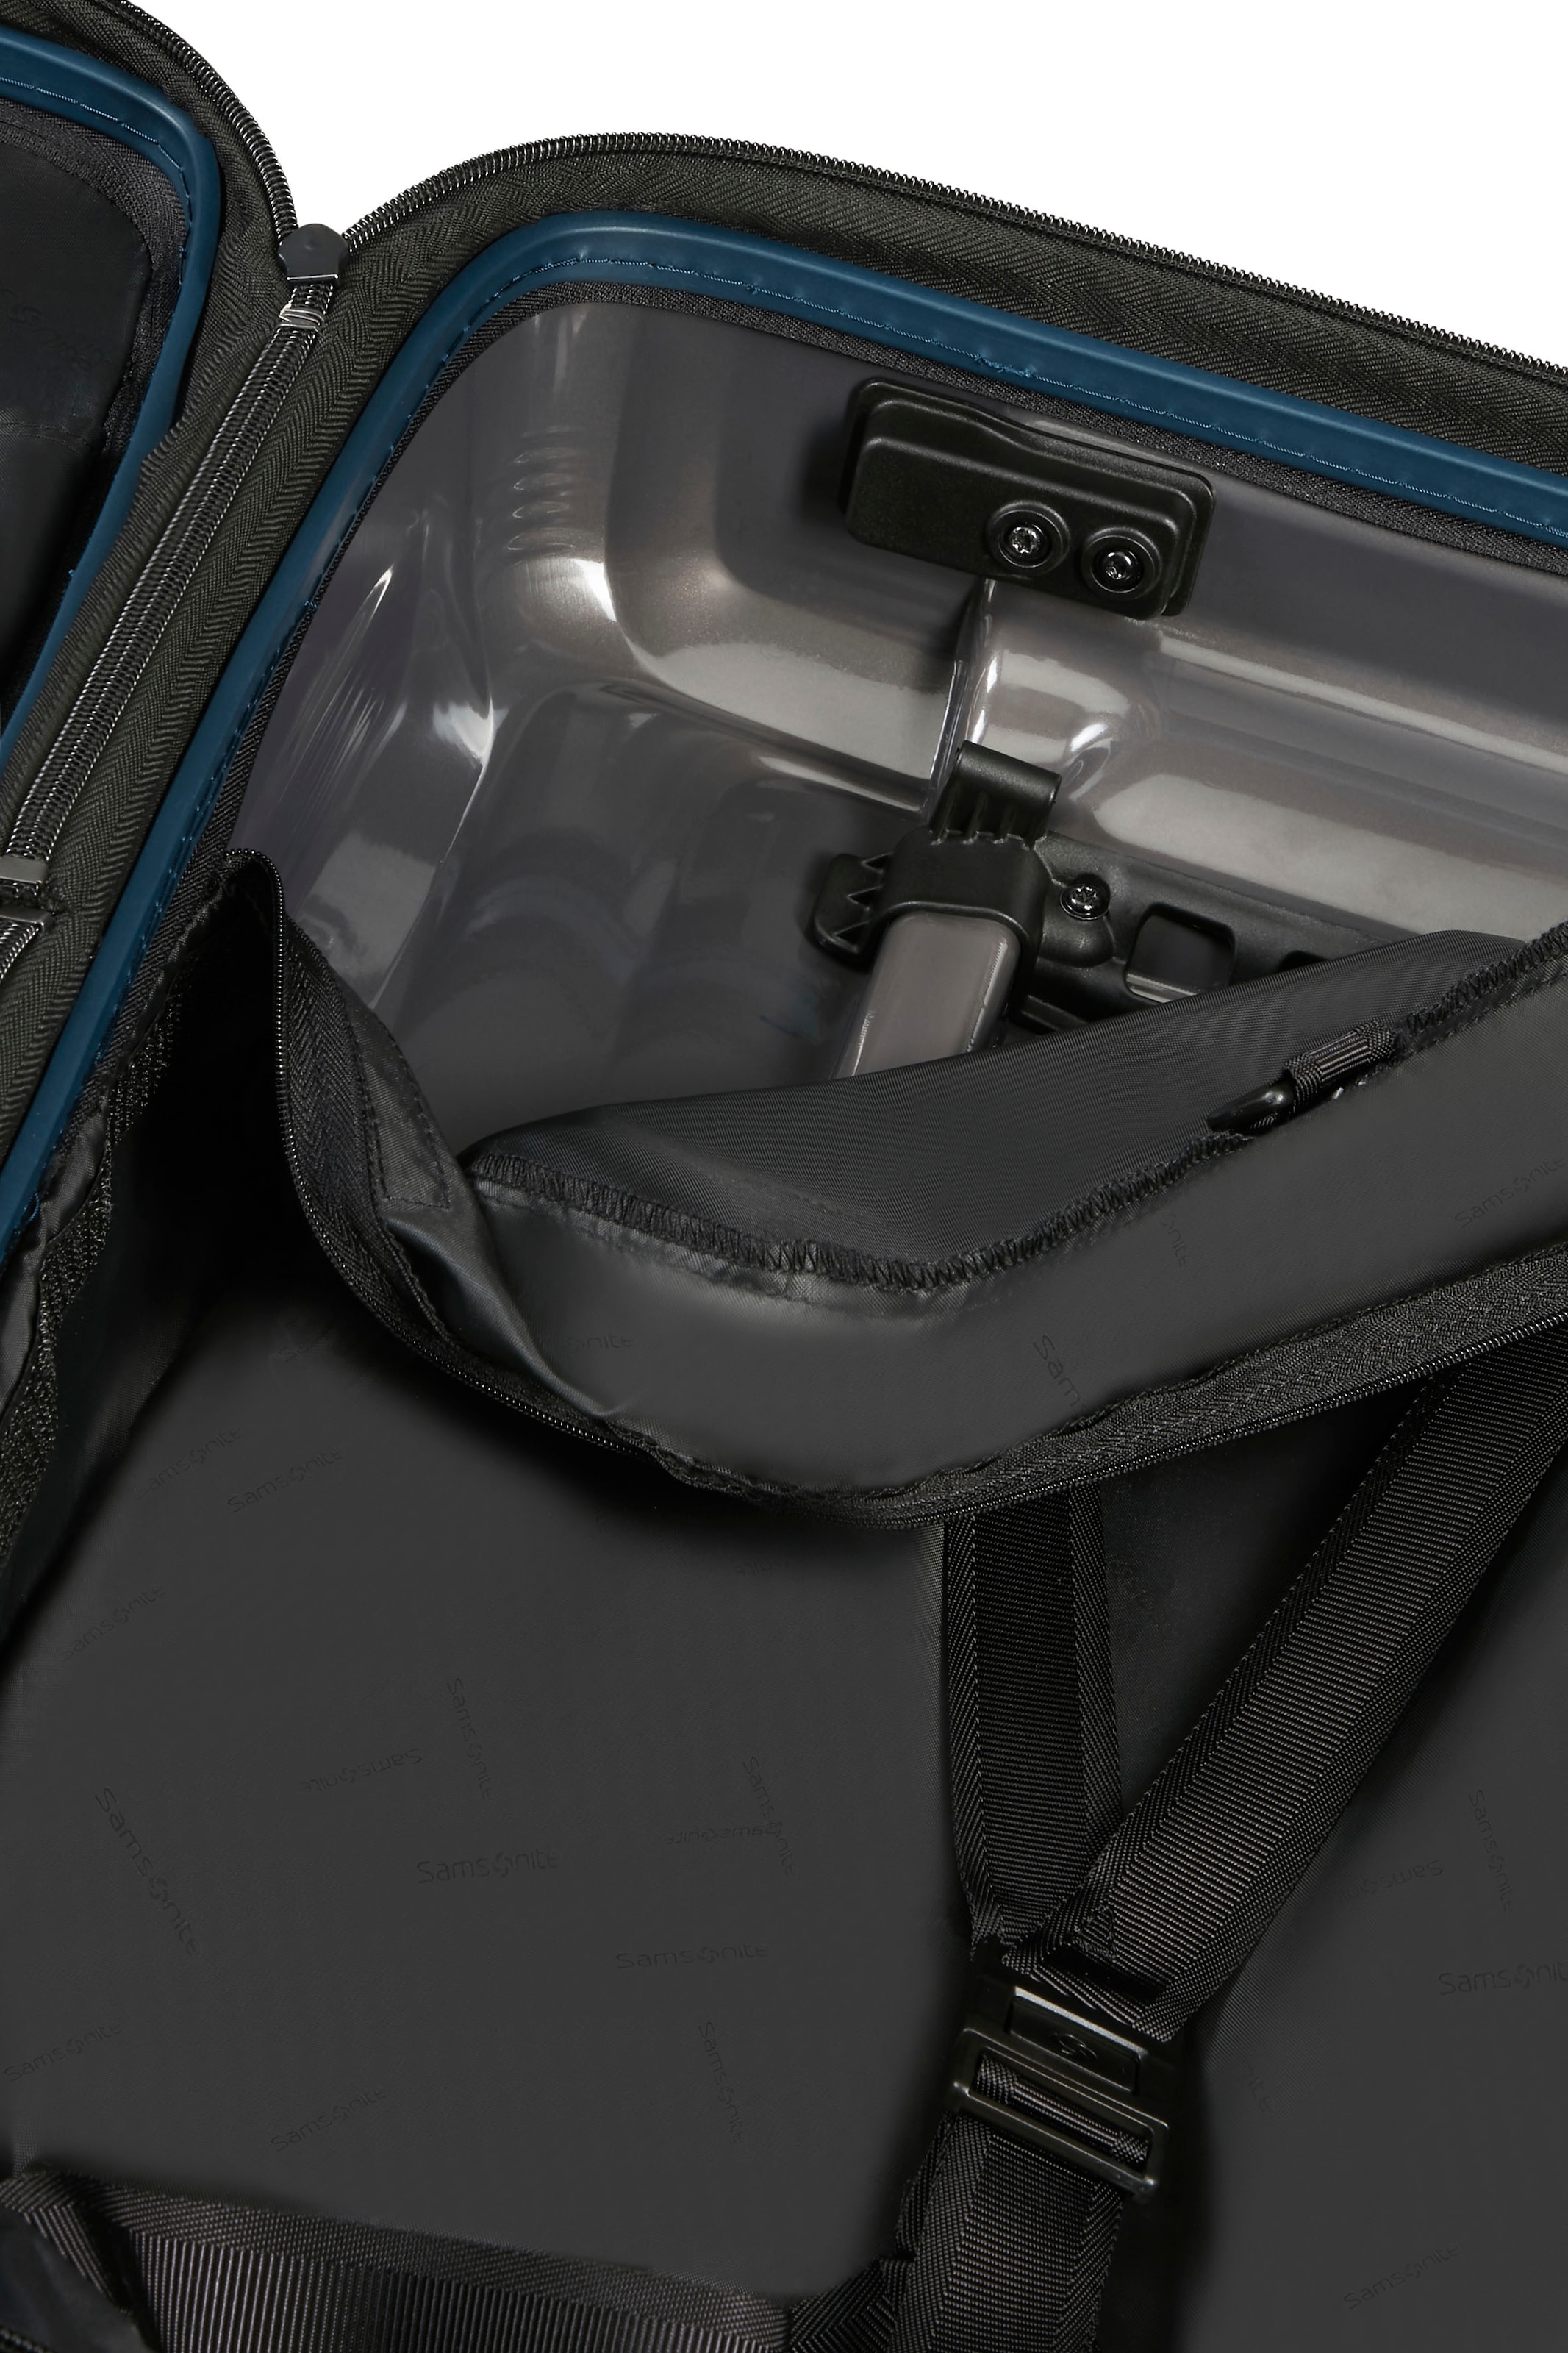 Samsonite Hartschalen-Trolley »Nuon metallic dark blue, 55 cm«, 4 Rollen, Handgepäck Reisekoffer Trolley Volumenerweiterung USB-Schleuse